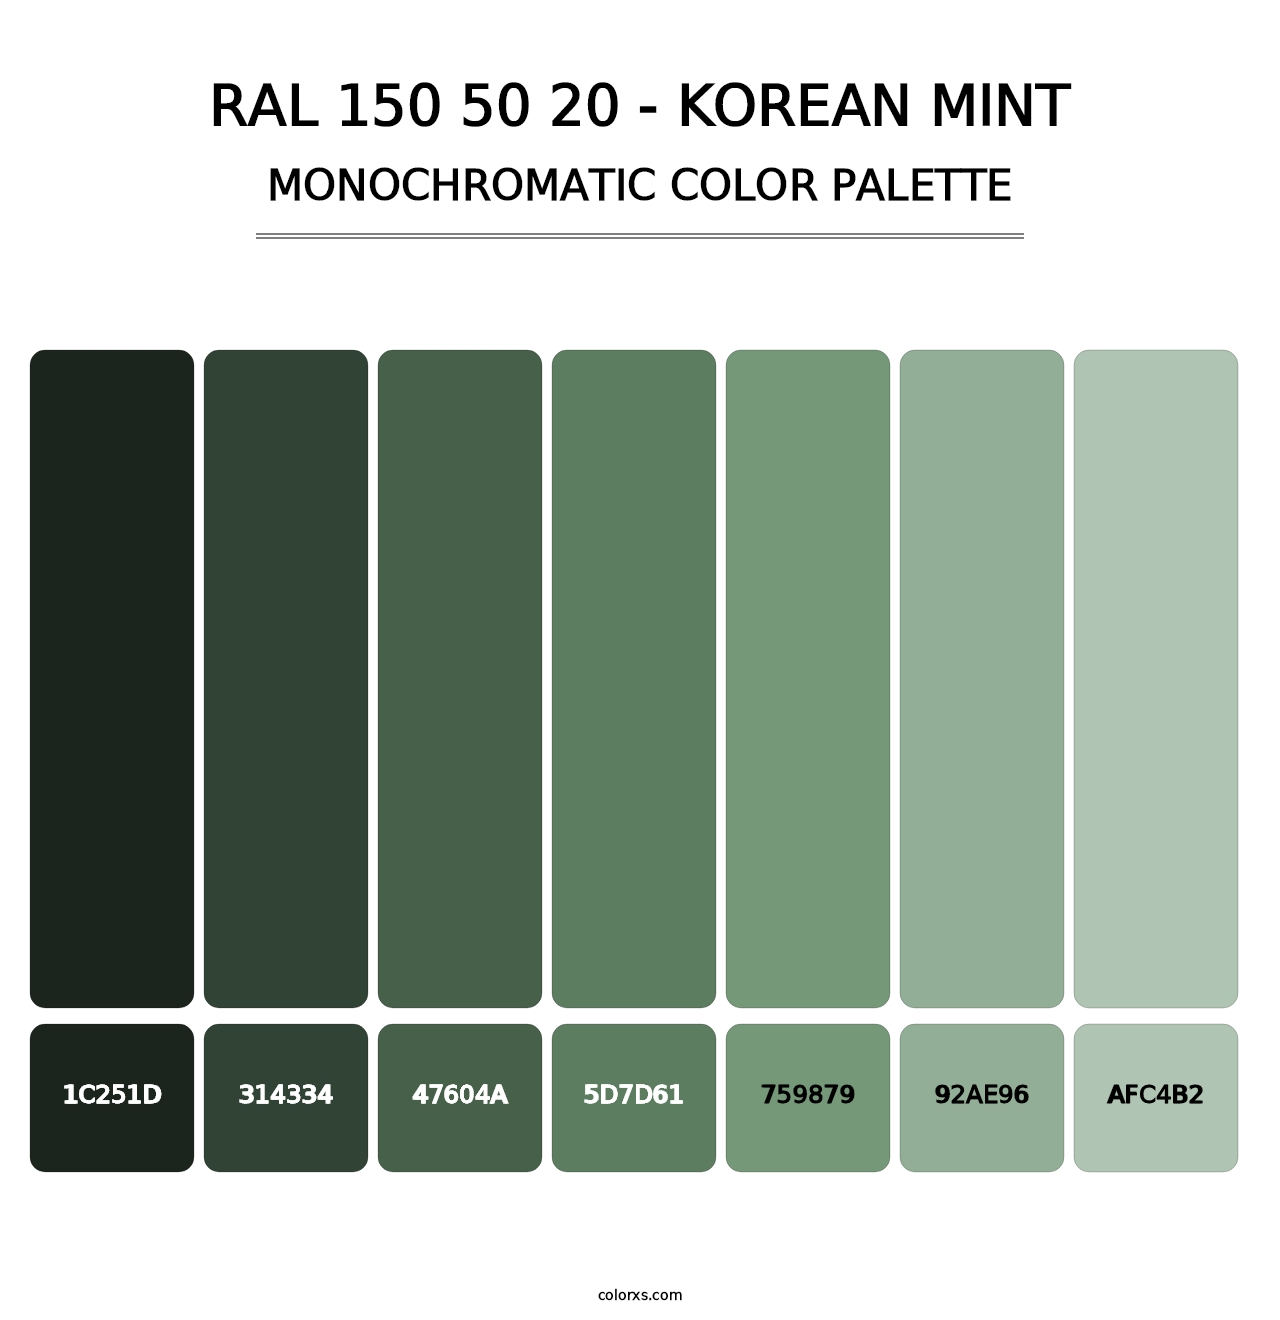 RAL 150 50 20 - Korean Mint - Monochromatic Color Palette